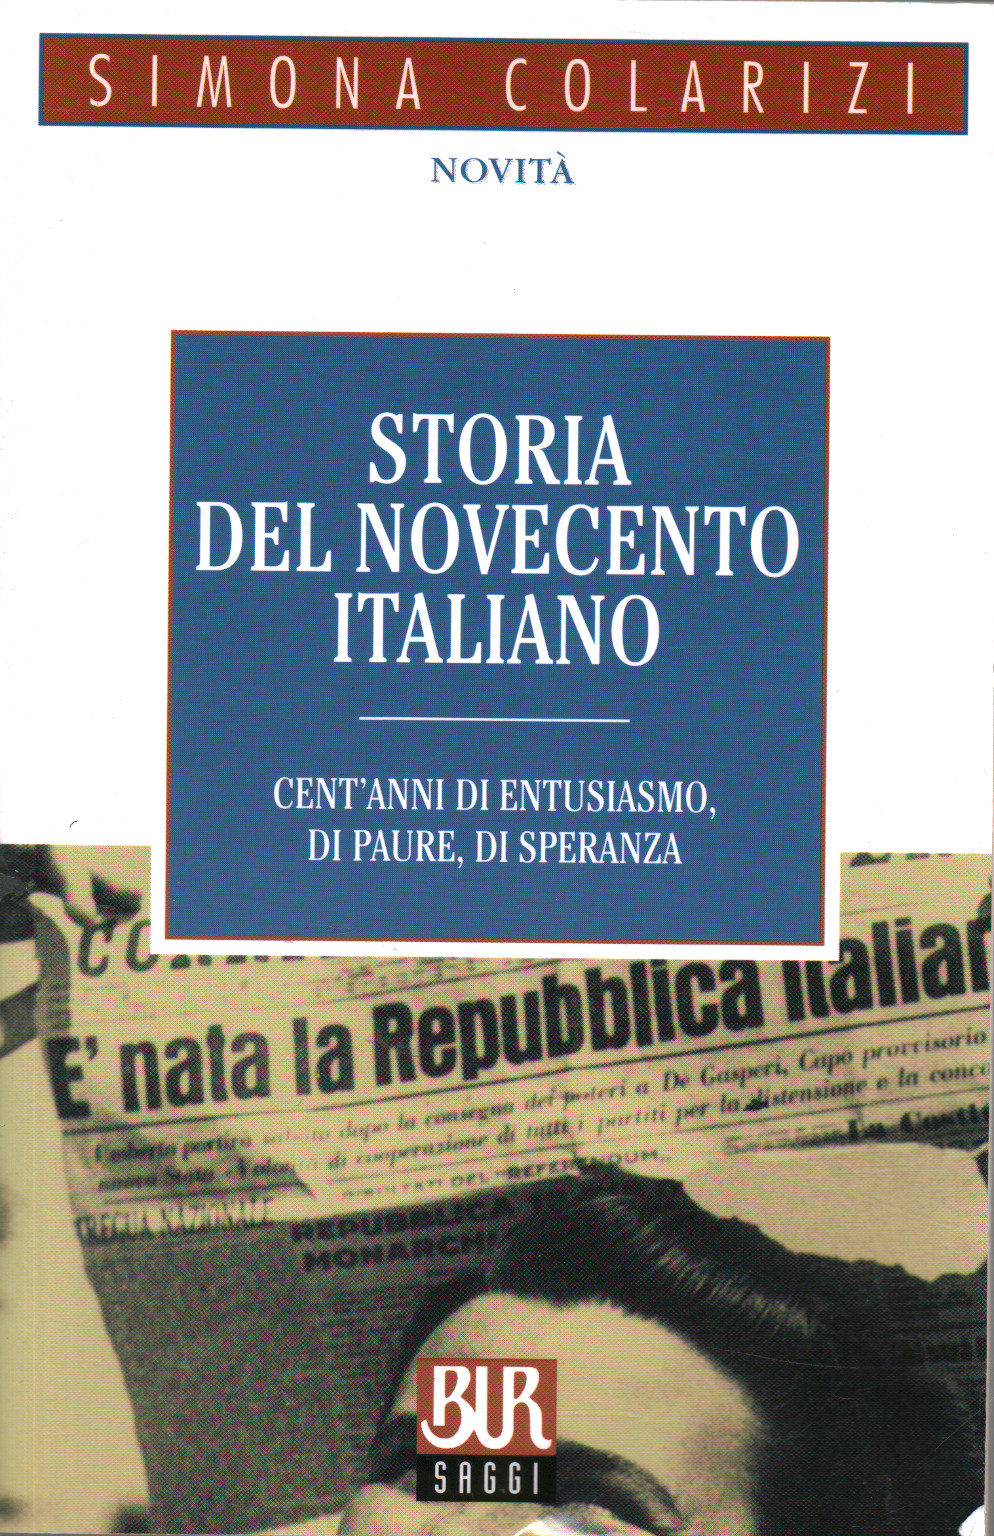 Geschichte des zwanzigsten Jahrhunderts in italien, Simona Colarizi